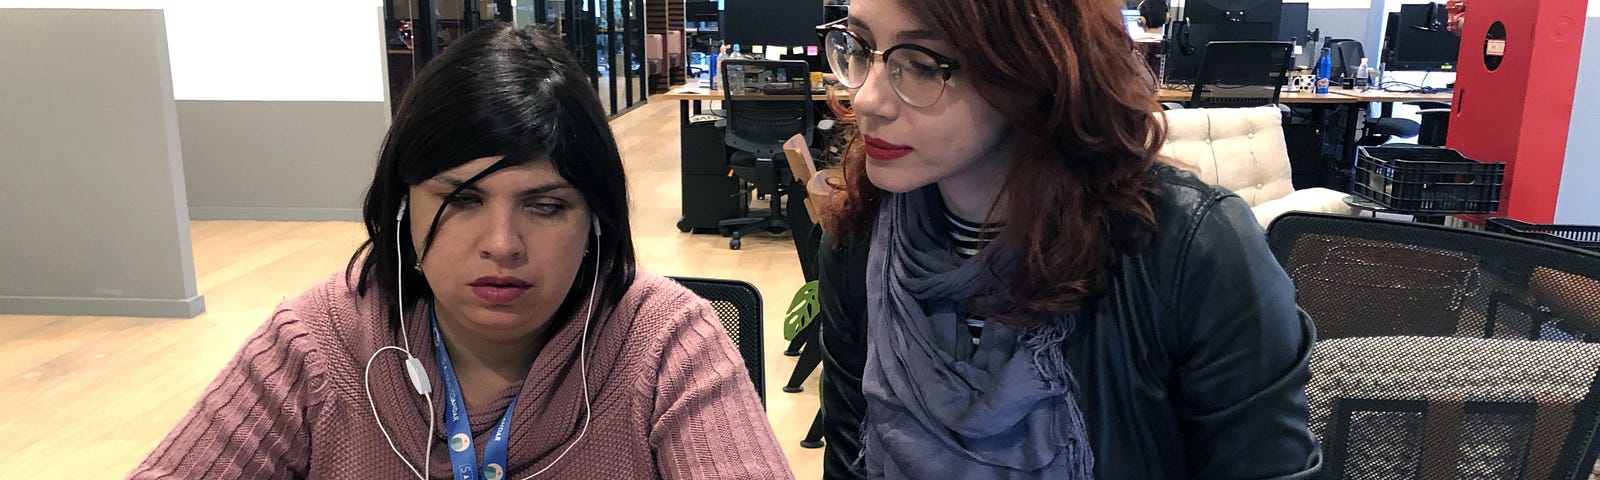 Camila e Iana estão sentadas na mesa de trabalho. Camila utiliza o celular com fones de ouvido enquanto Iana observa.